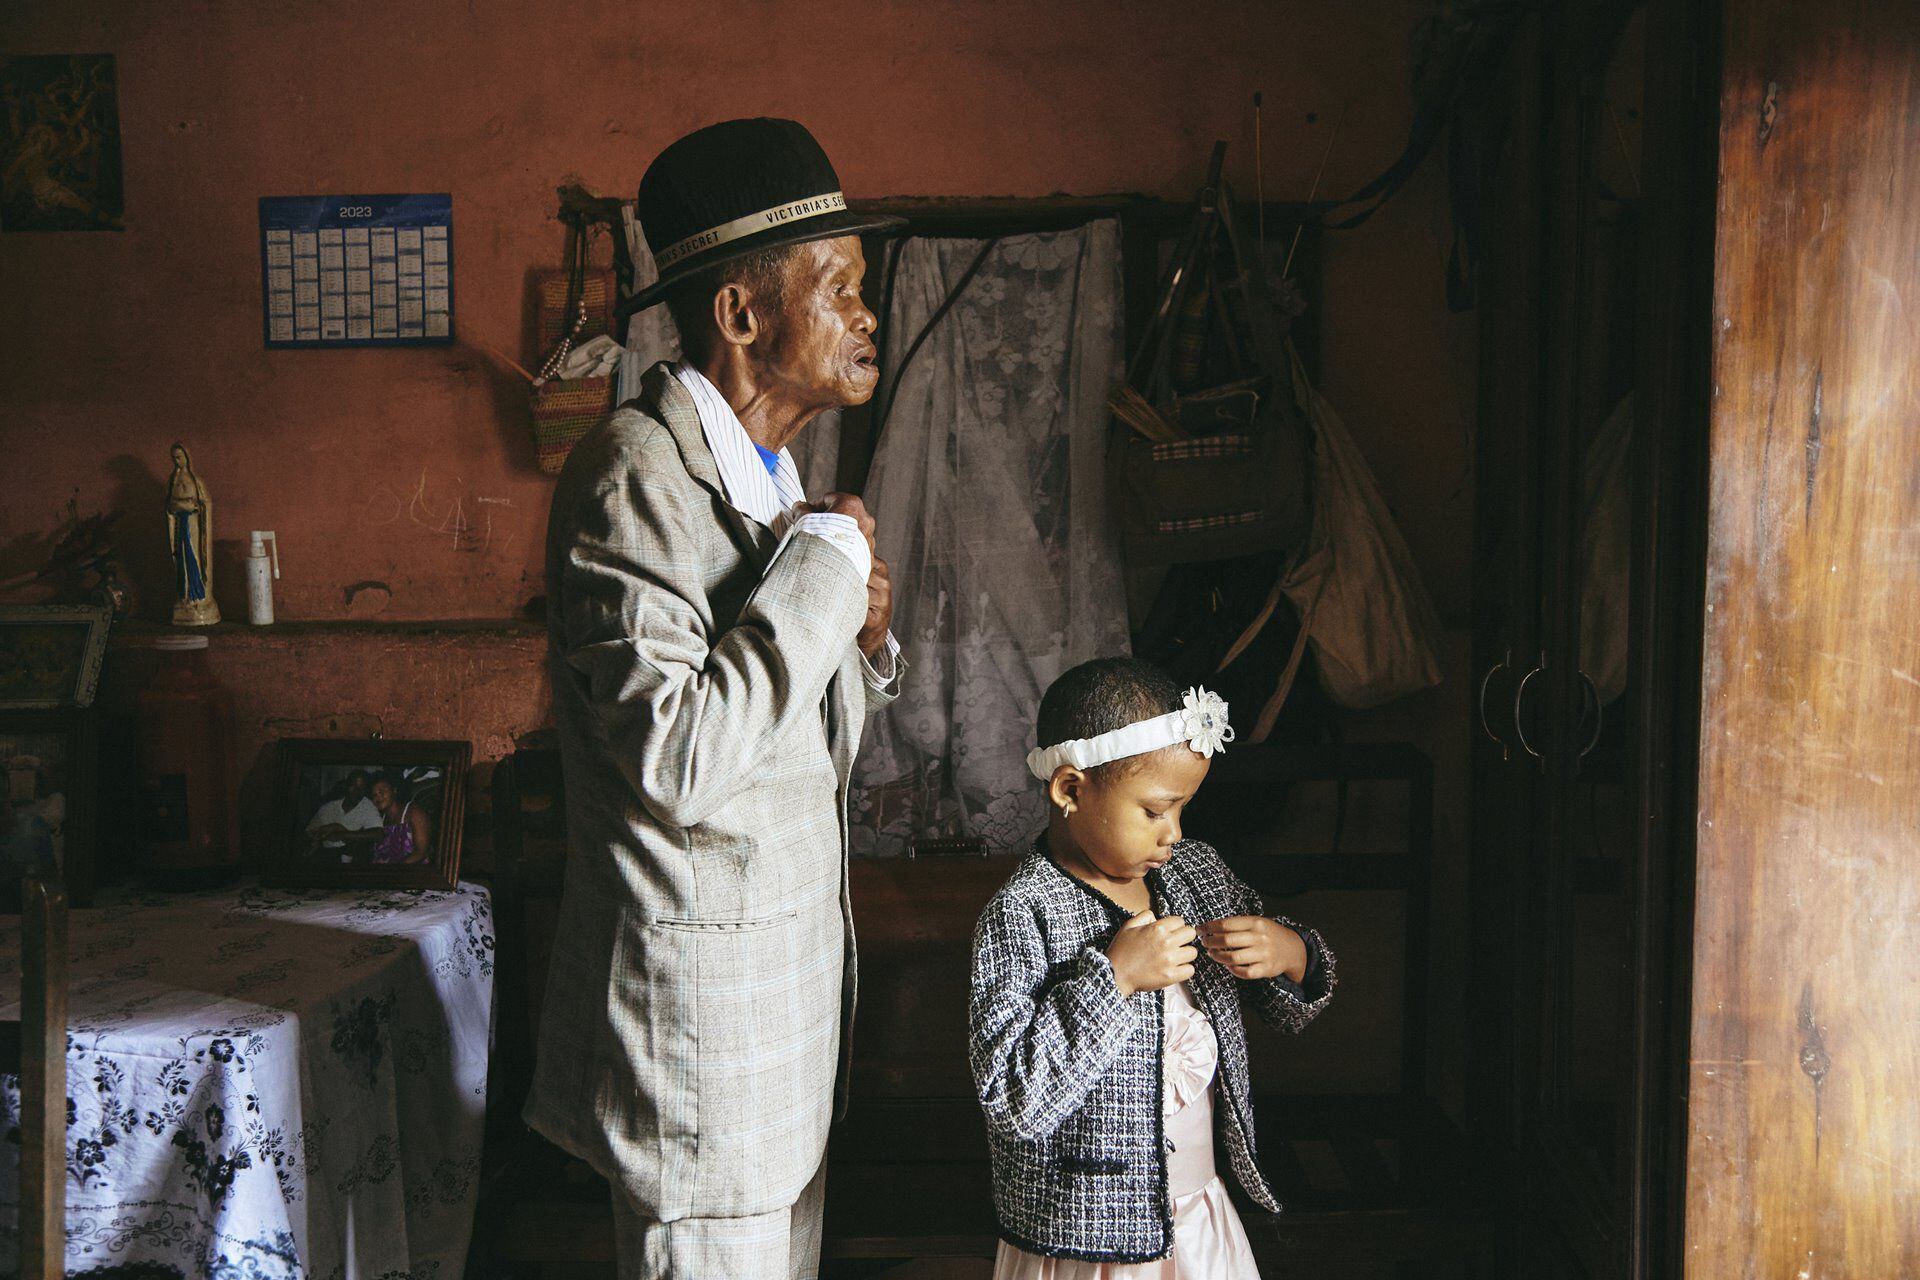 La fotógrafa de GEO, Lee-Ann Olwage, de Sudáfrica ganó la categoría de historia del año con imágenes que documentan la demencia en Madagascar. Foto: Lee-Ann Olwage